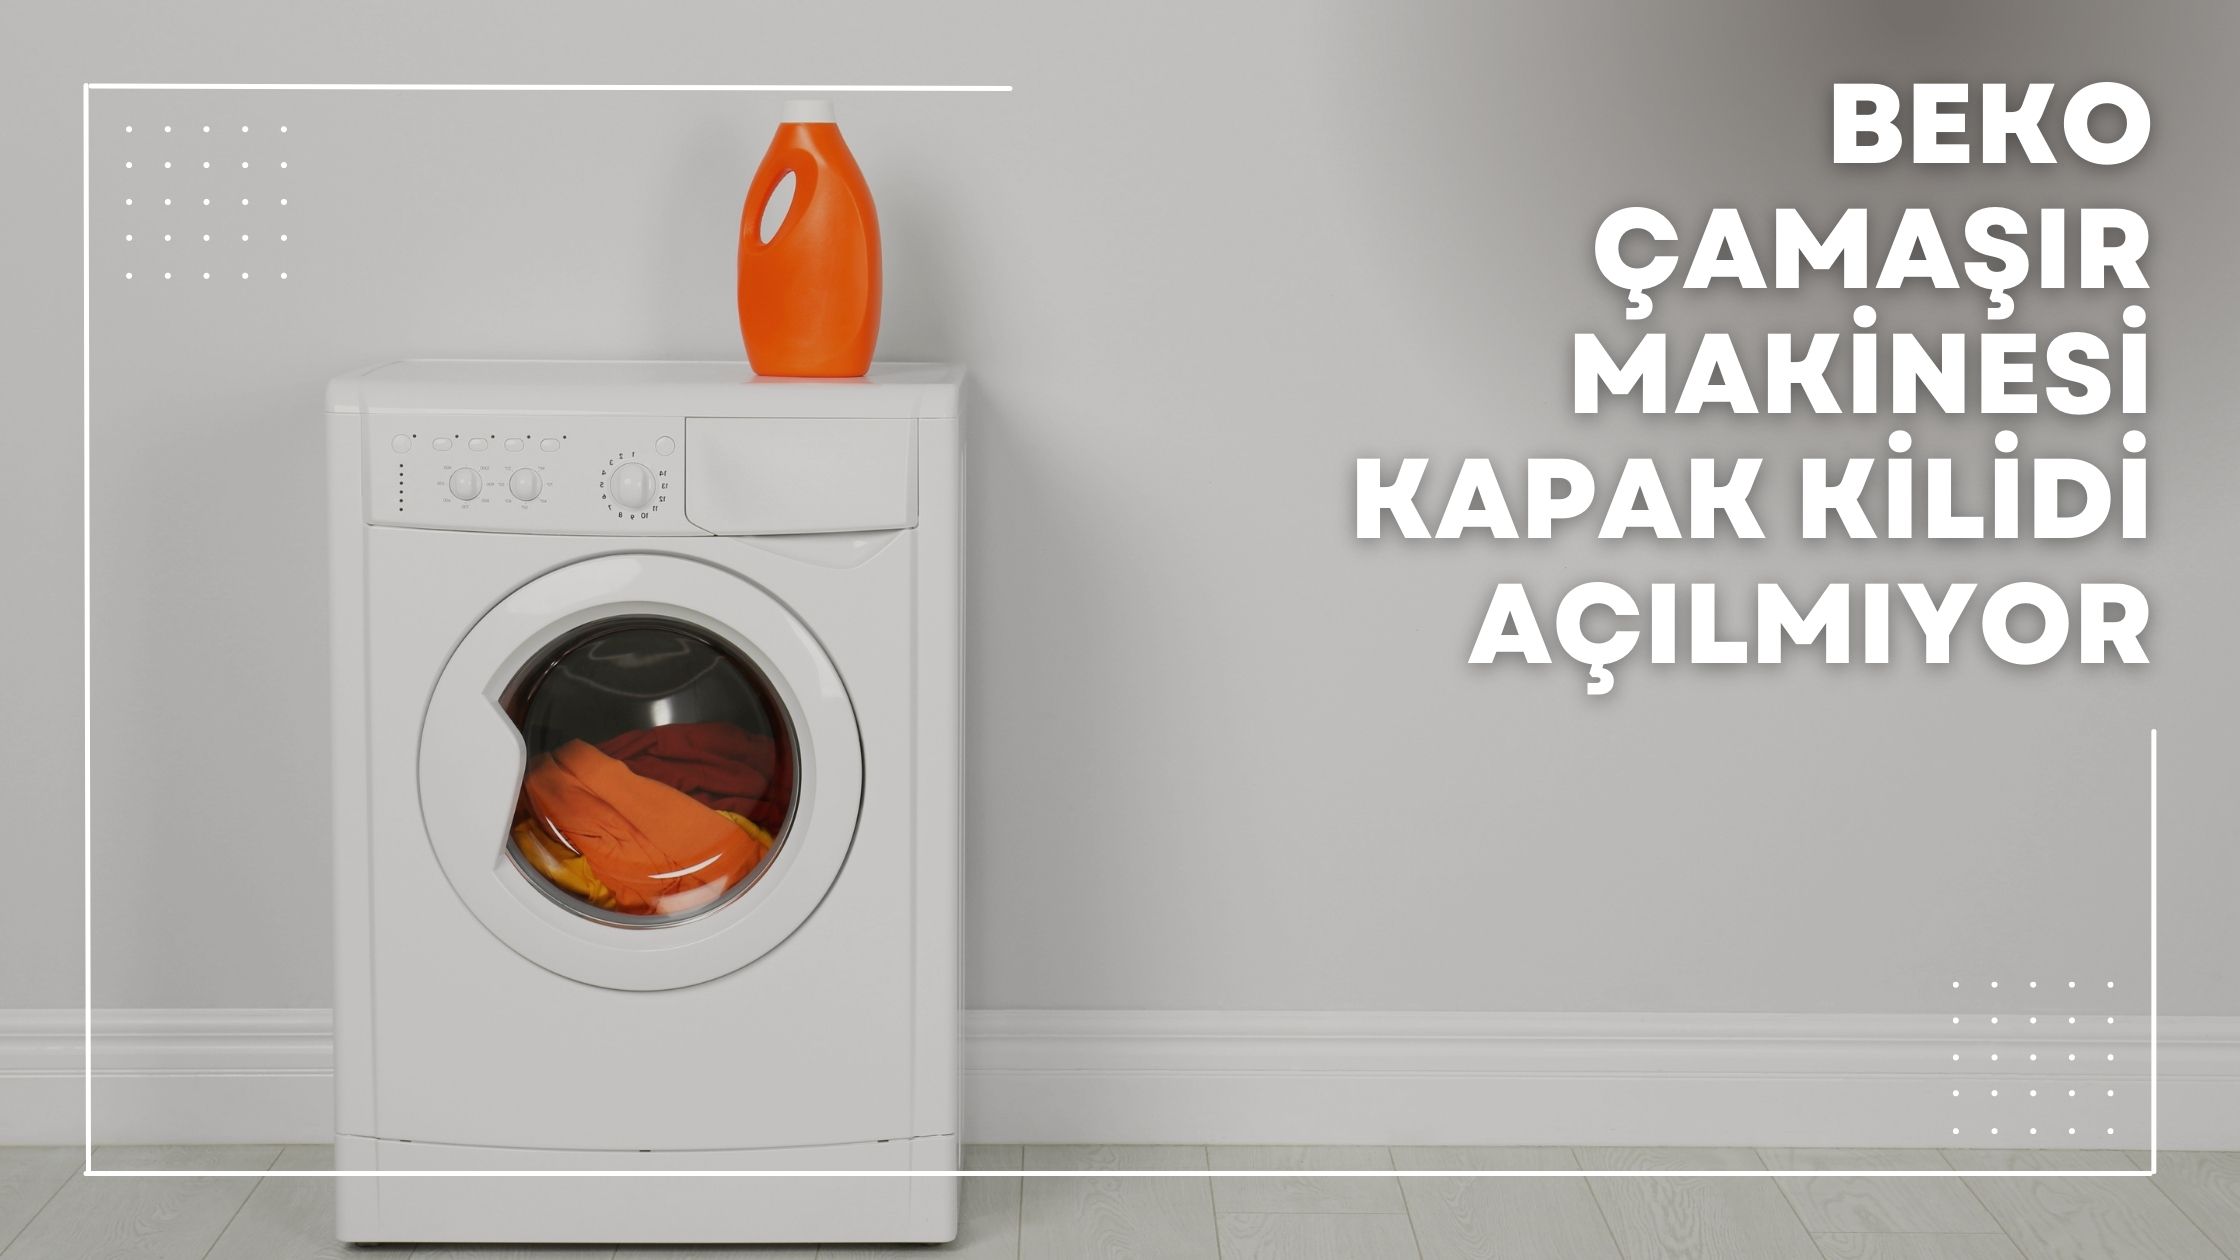 Beko Çamaşır Makinesi Kapak Kilidi Açılmıyor